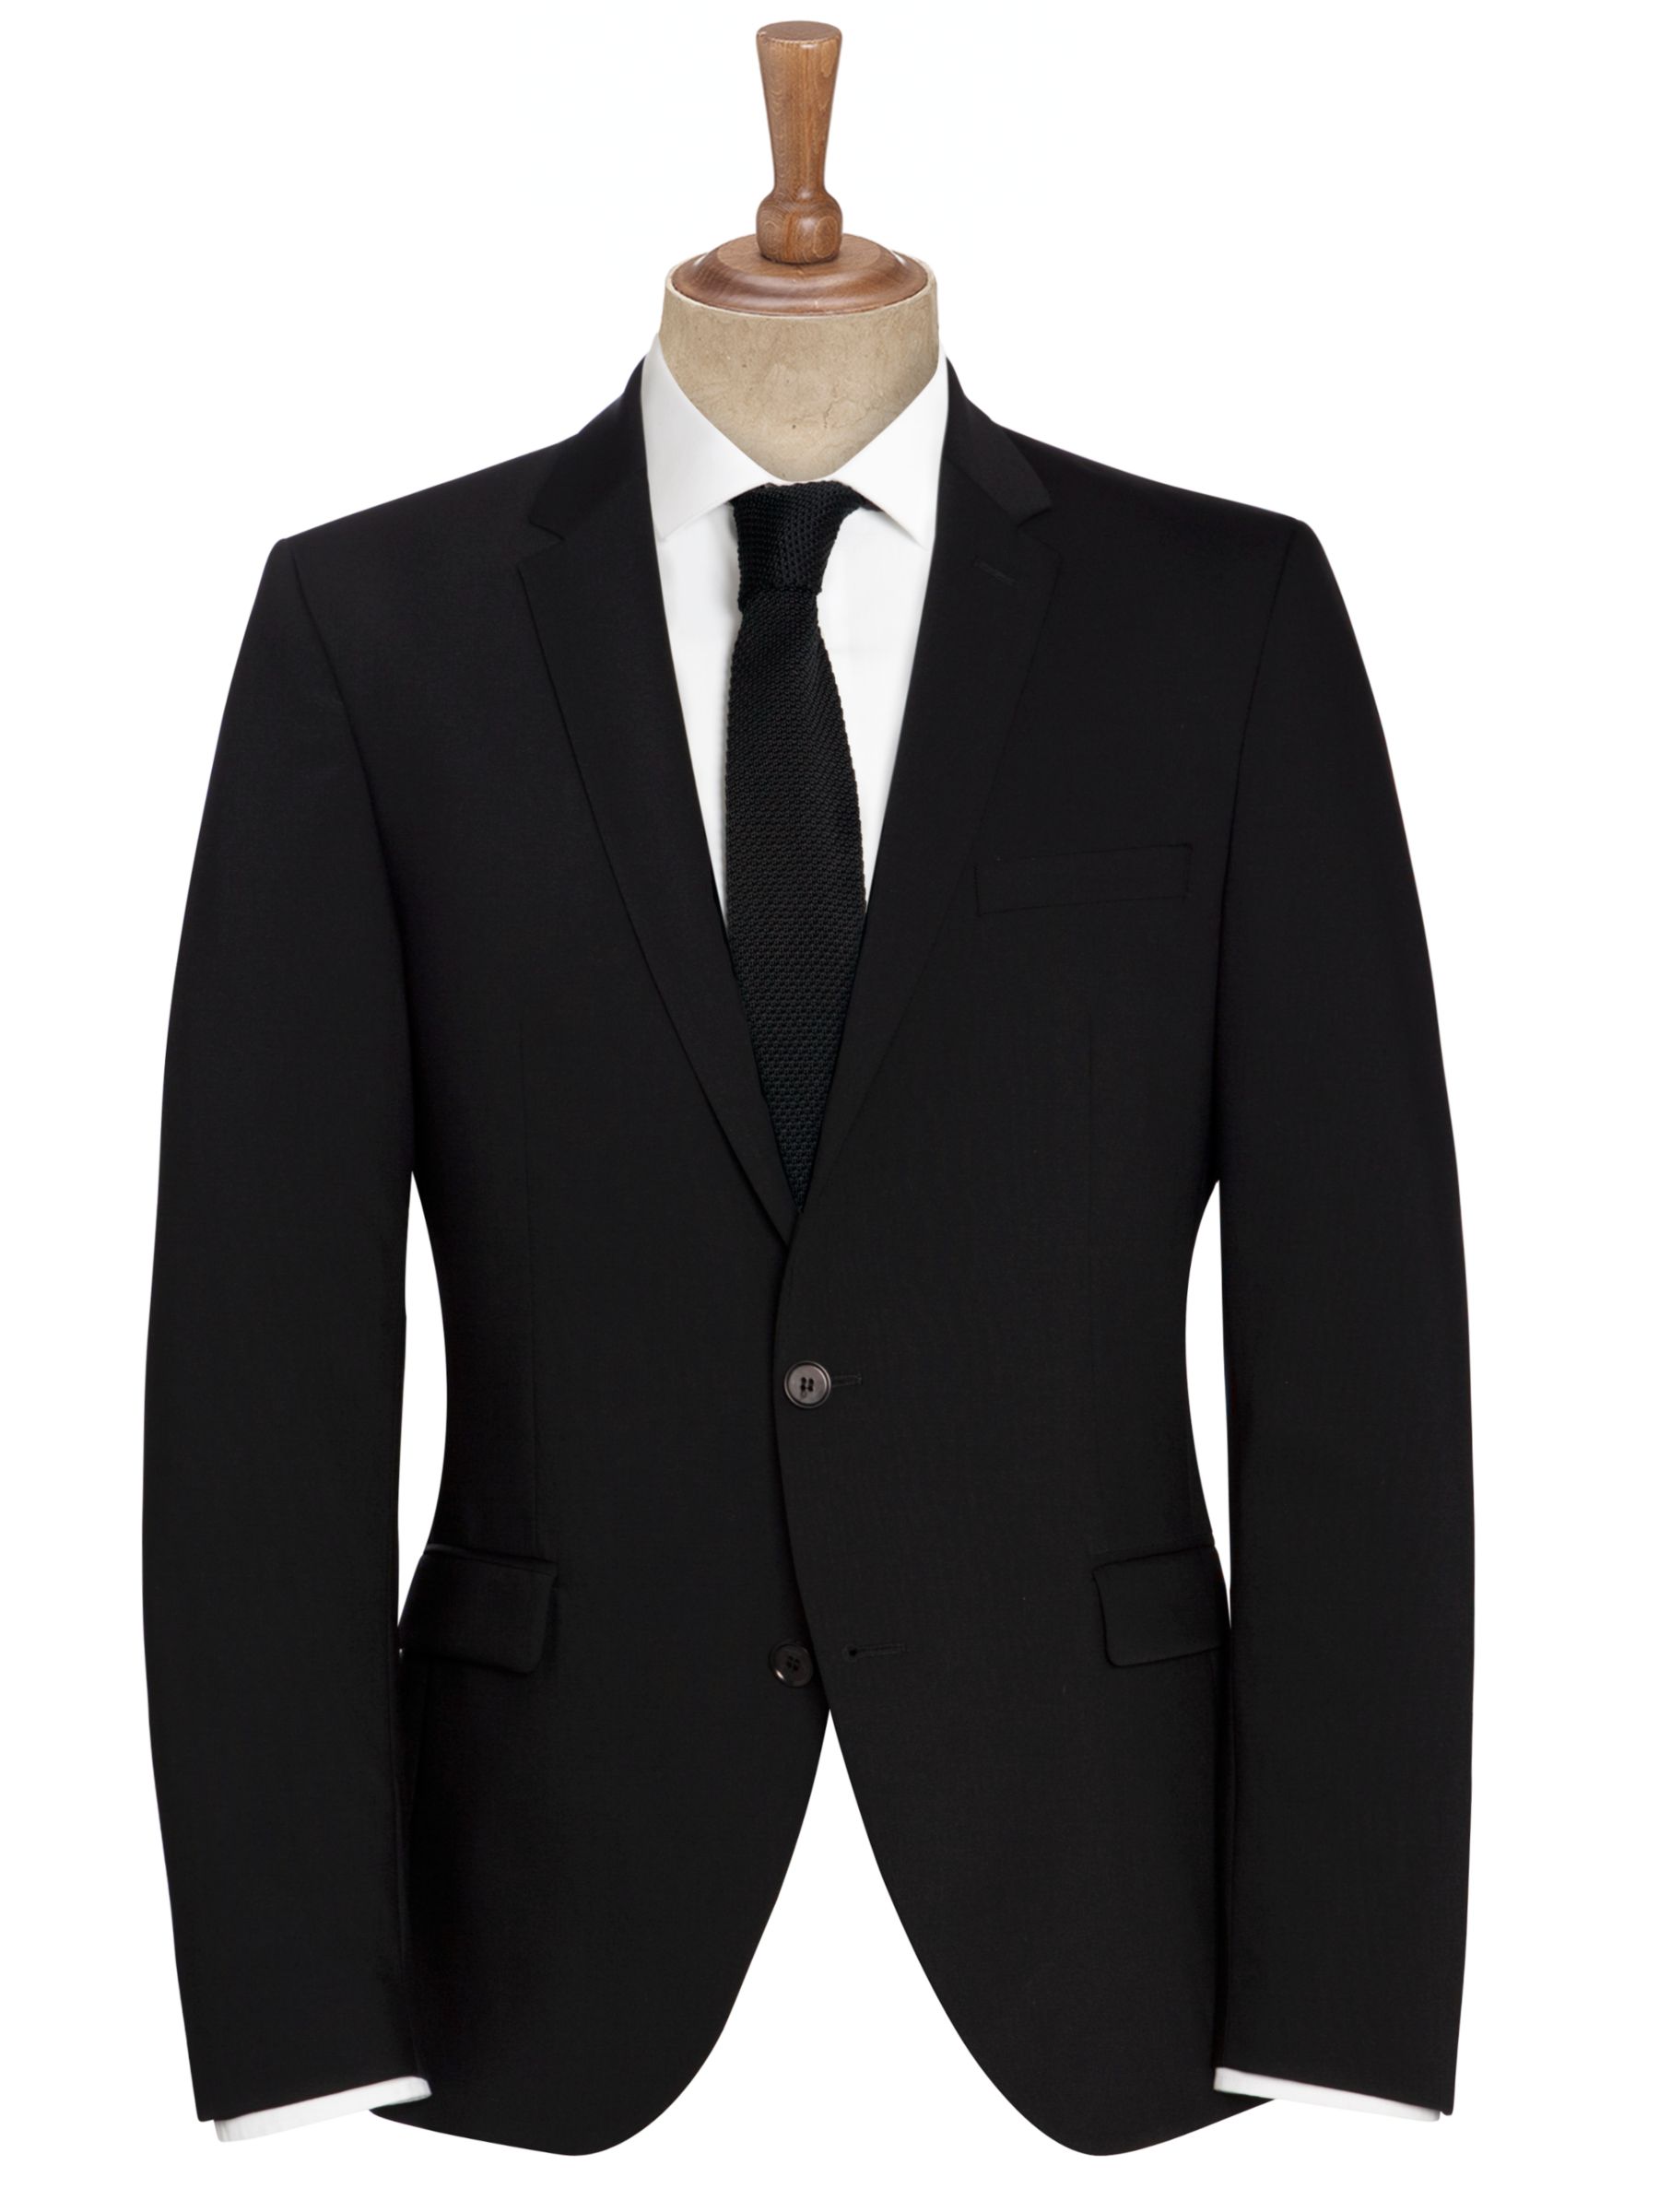 Men's Suits Offers | John Lewis